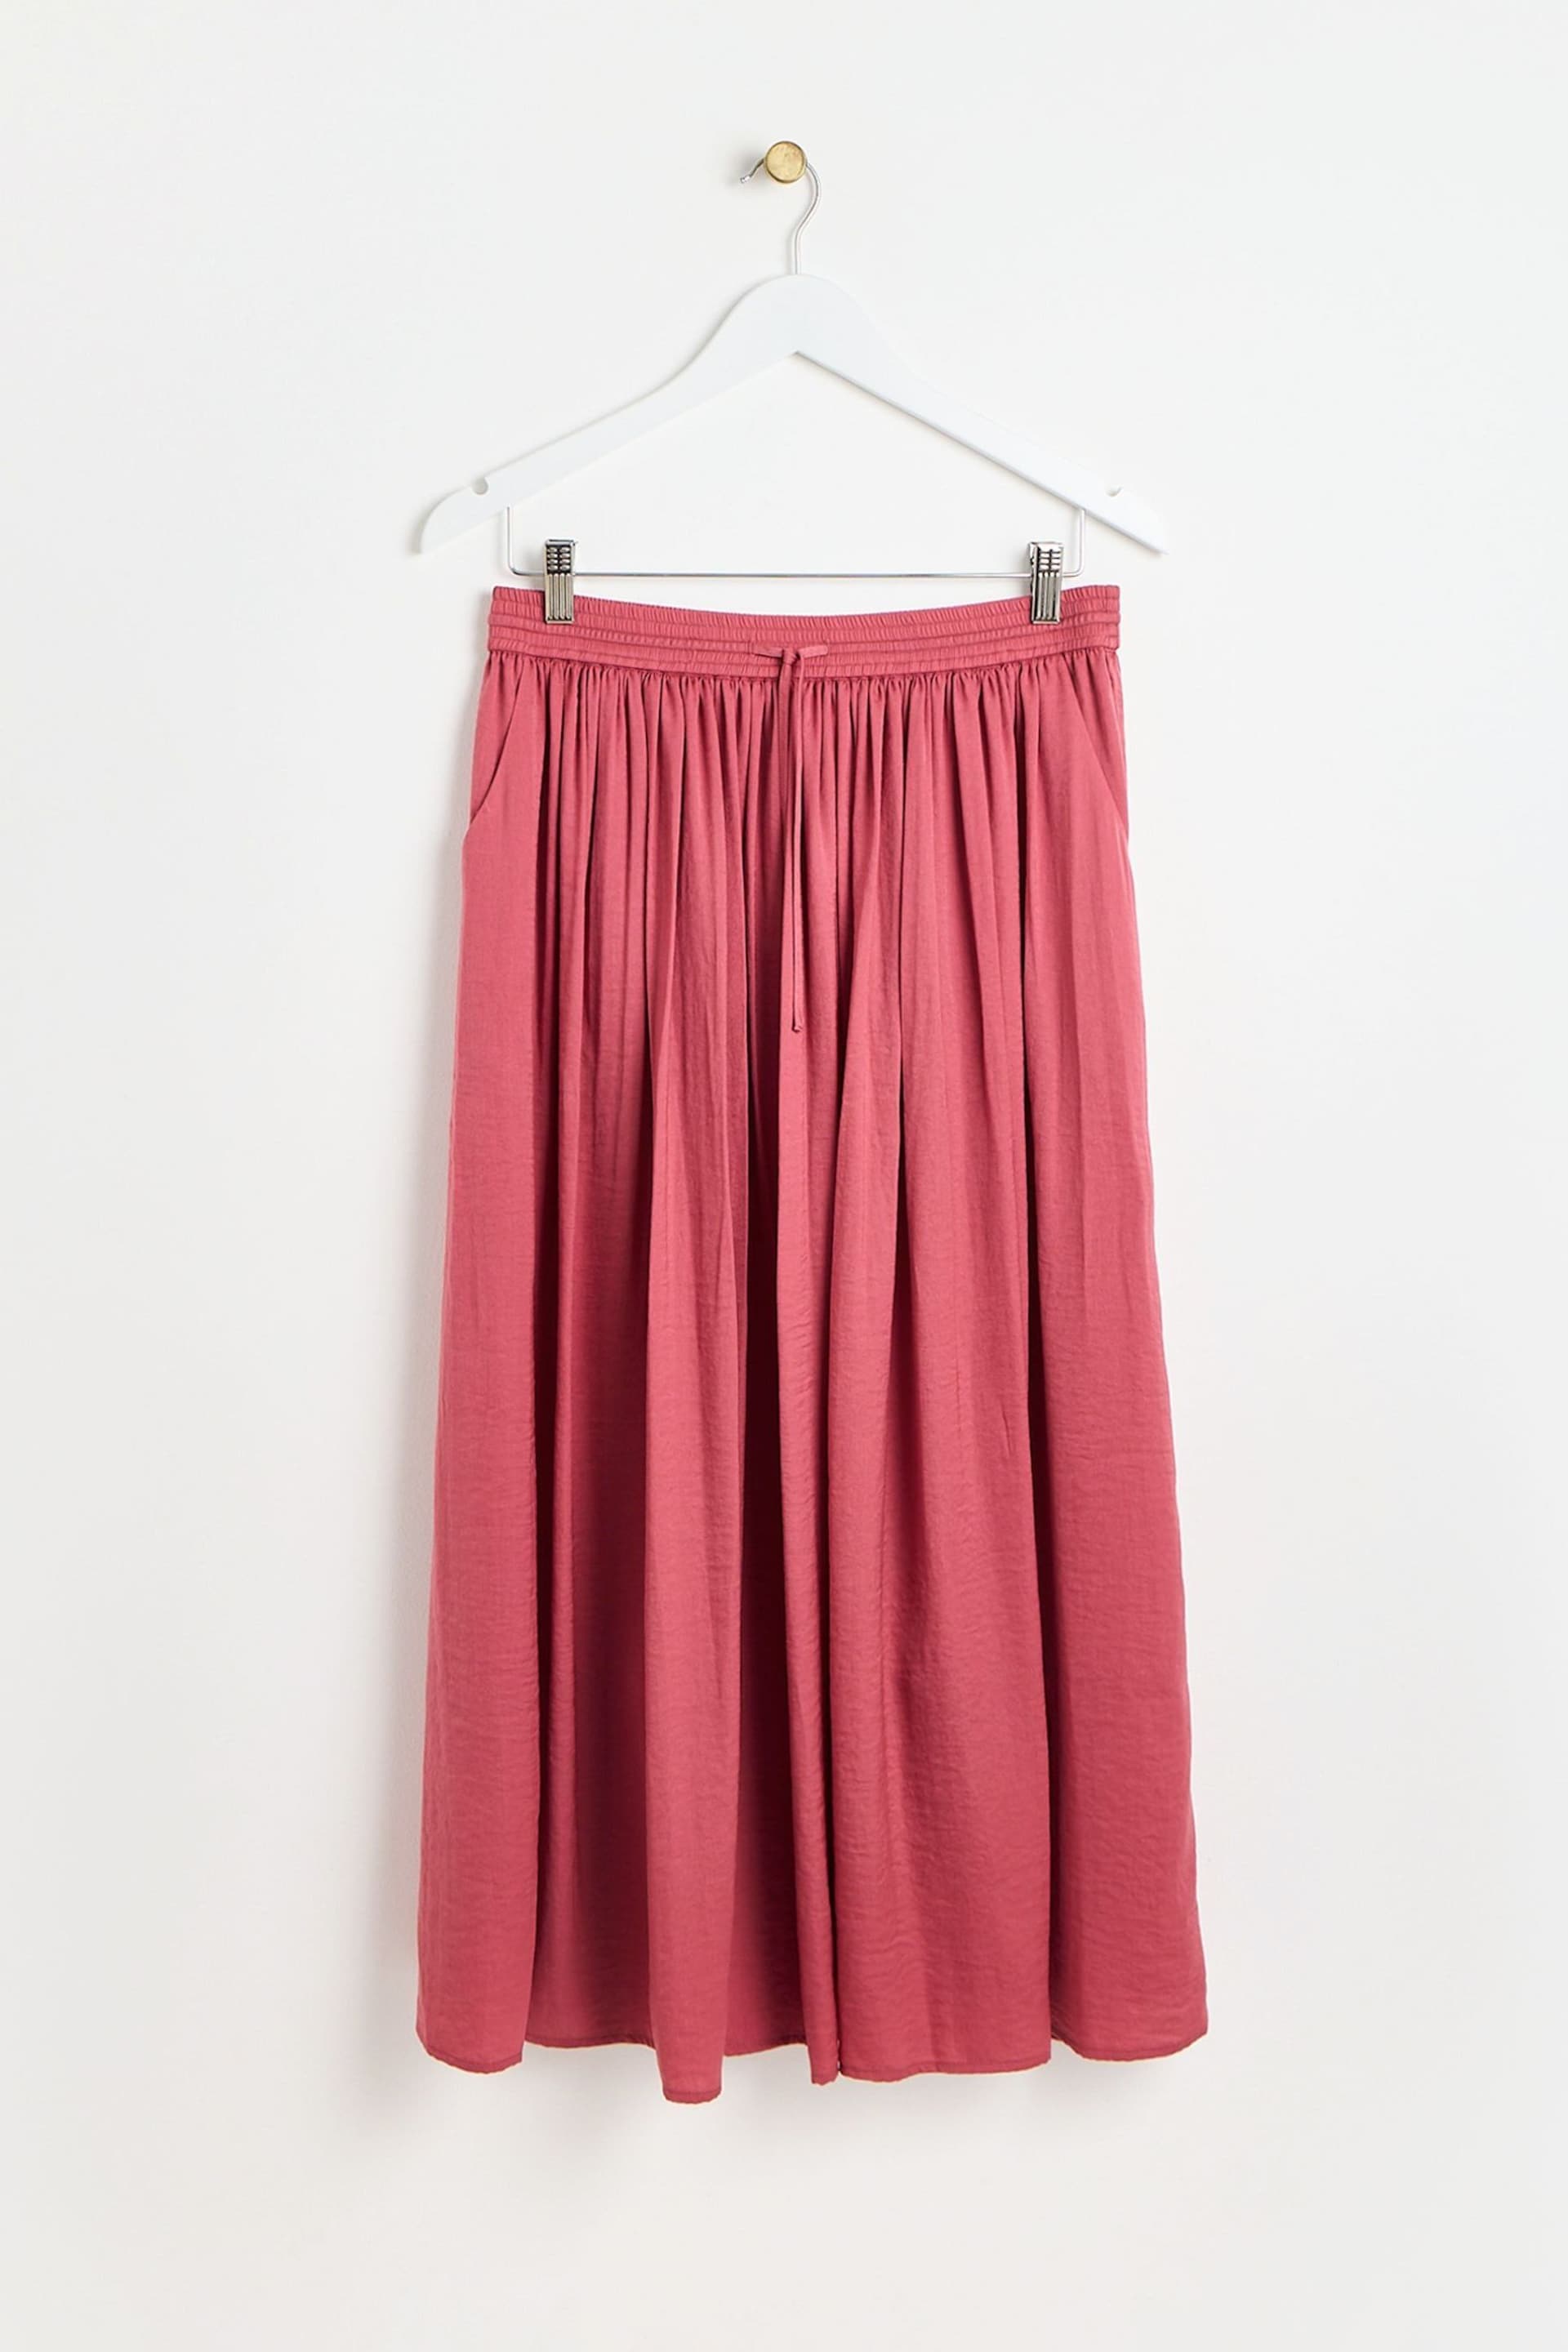 Oliver Bonas Rose Pink Pleated Midi Skirt - Image 1 of 7